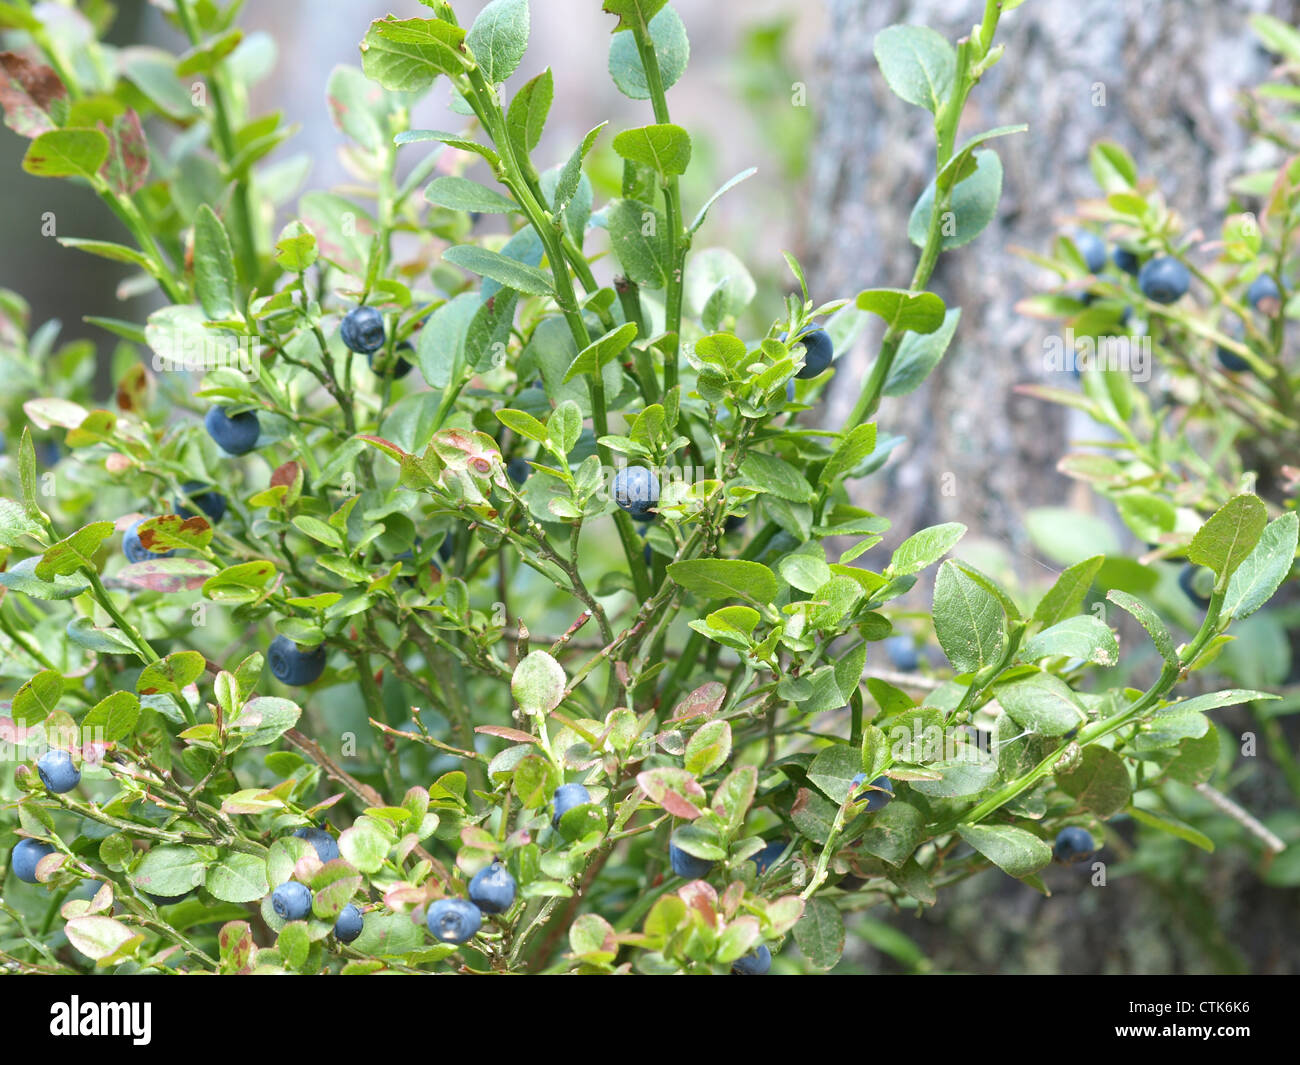 ripe wood blueberries at a blueberry shrub / Vaccinium myrtillus / reife Wald-Heidelbeeren am Heidelbeerstrauch Stock Photo